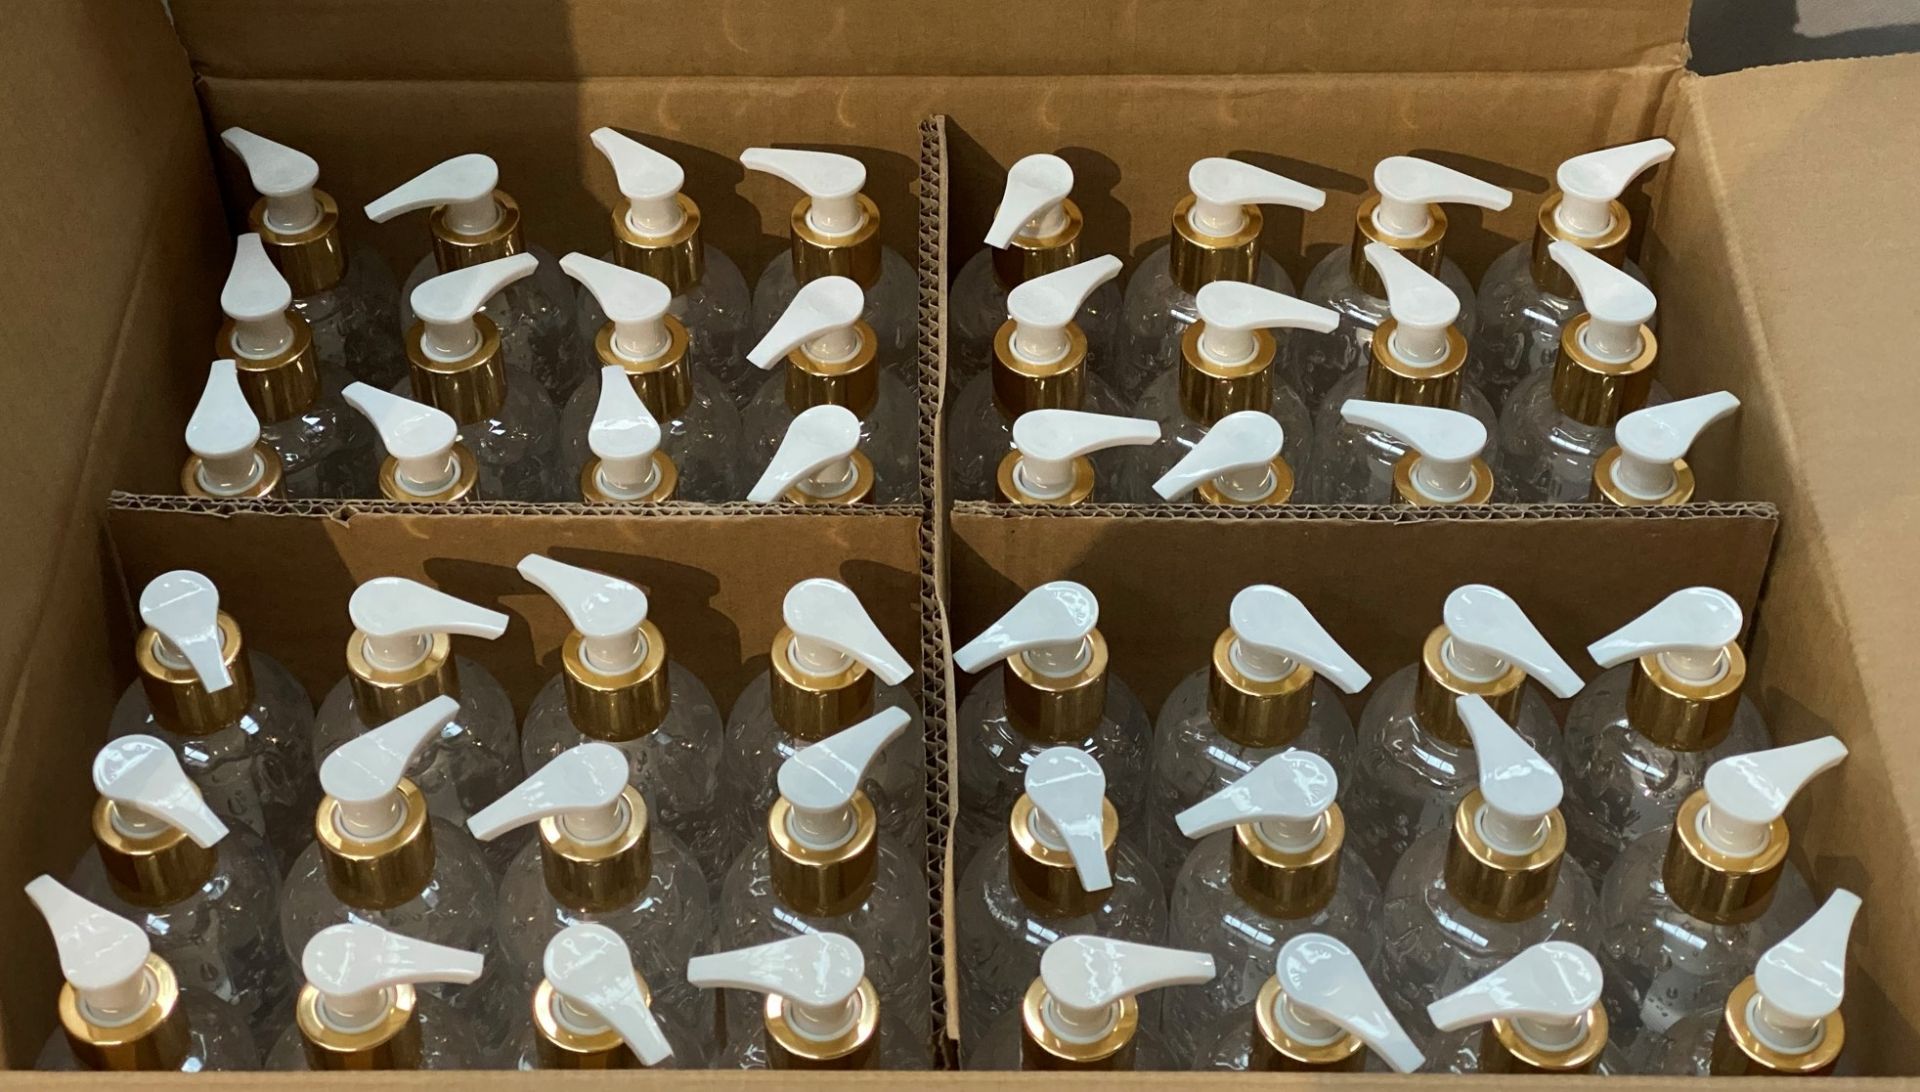 192 x 200ml pump top bottles of Rosdon Group UK hand sanitiser (Unlabelled clear plastic bottles) - - Image 3 of 5